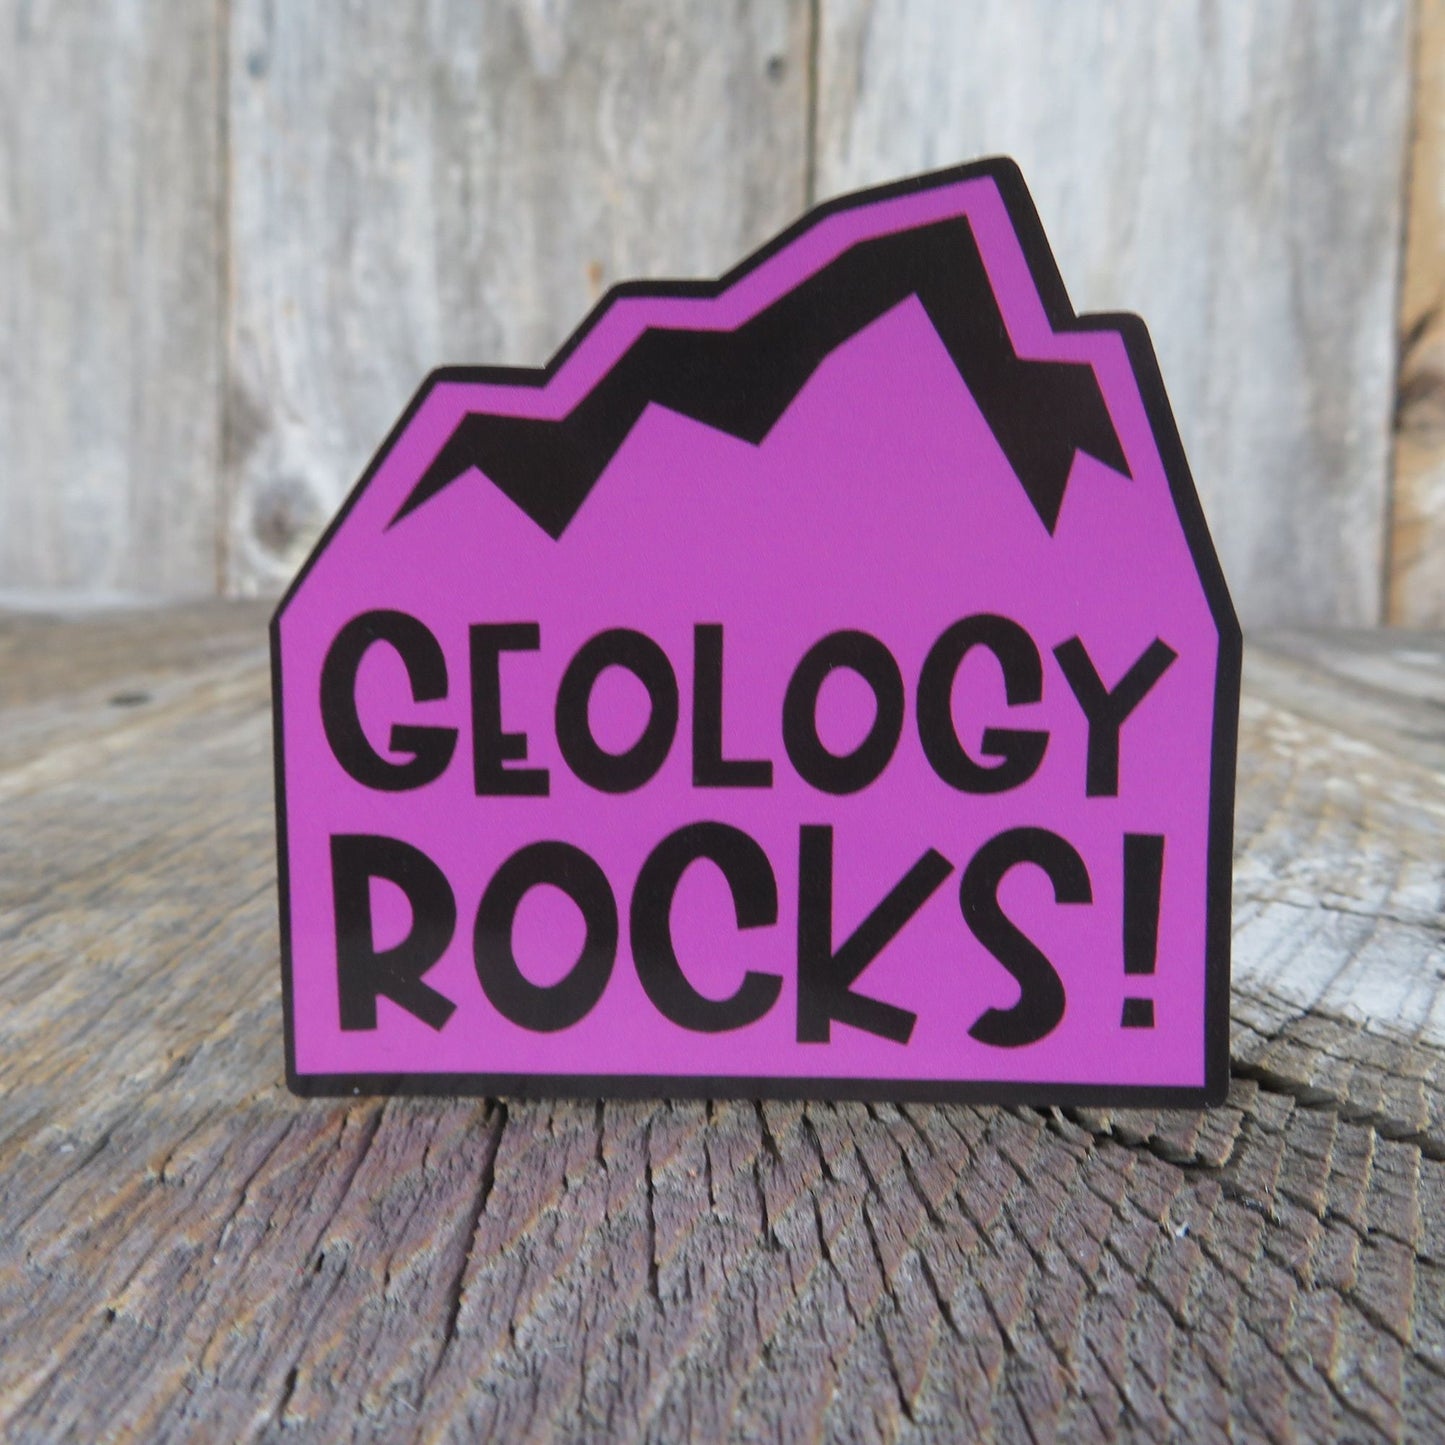 Geology Rocks Sticker Waterproof Rock Lover Geologist Humor Funny Dad Joke Science